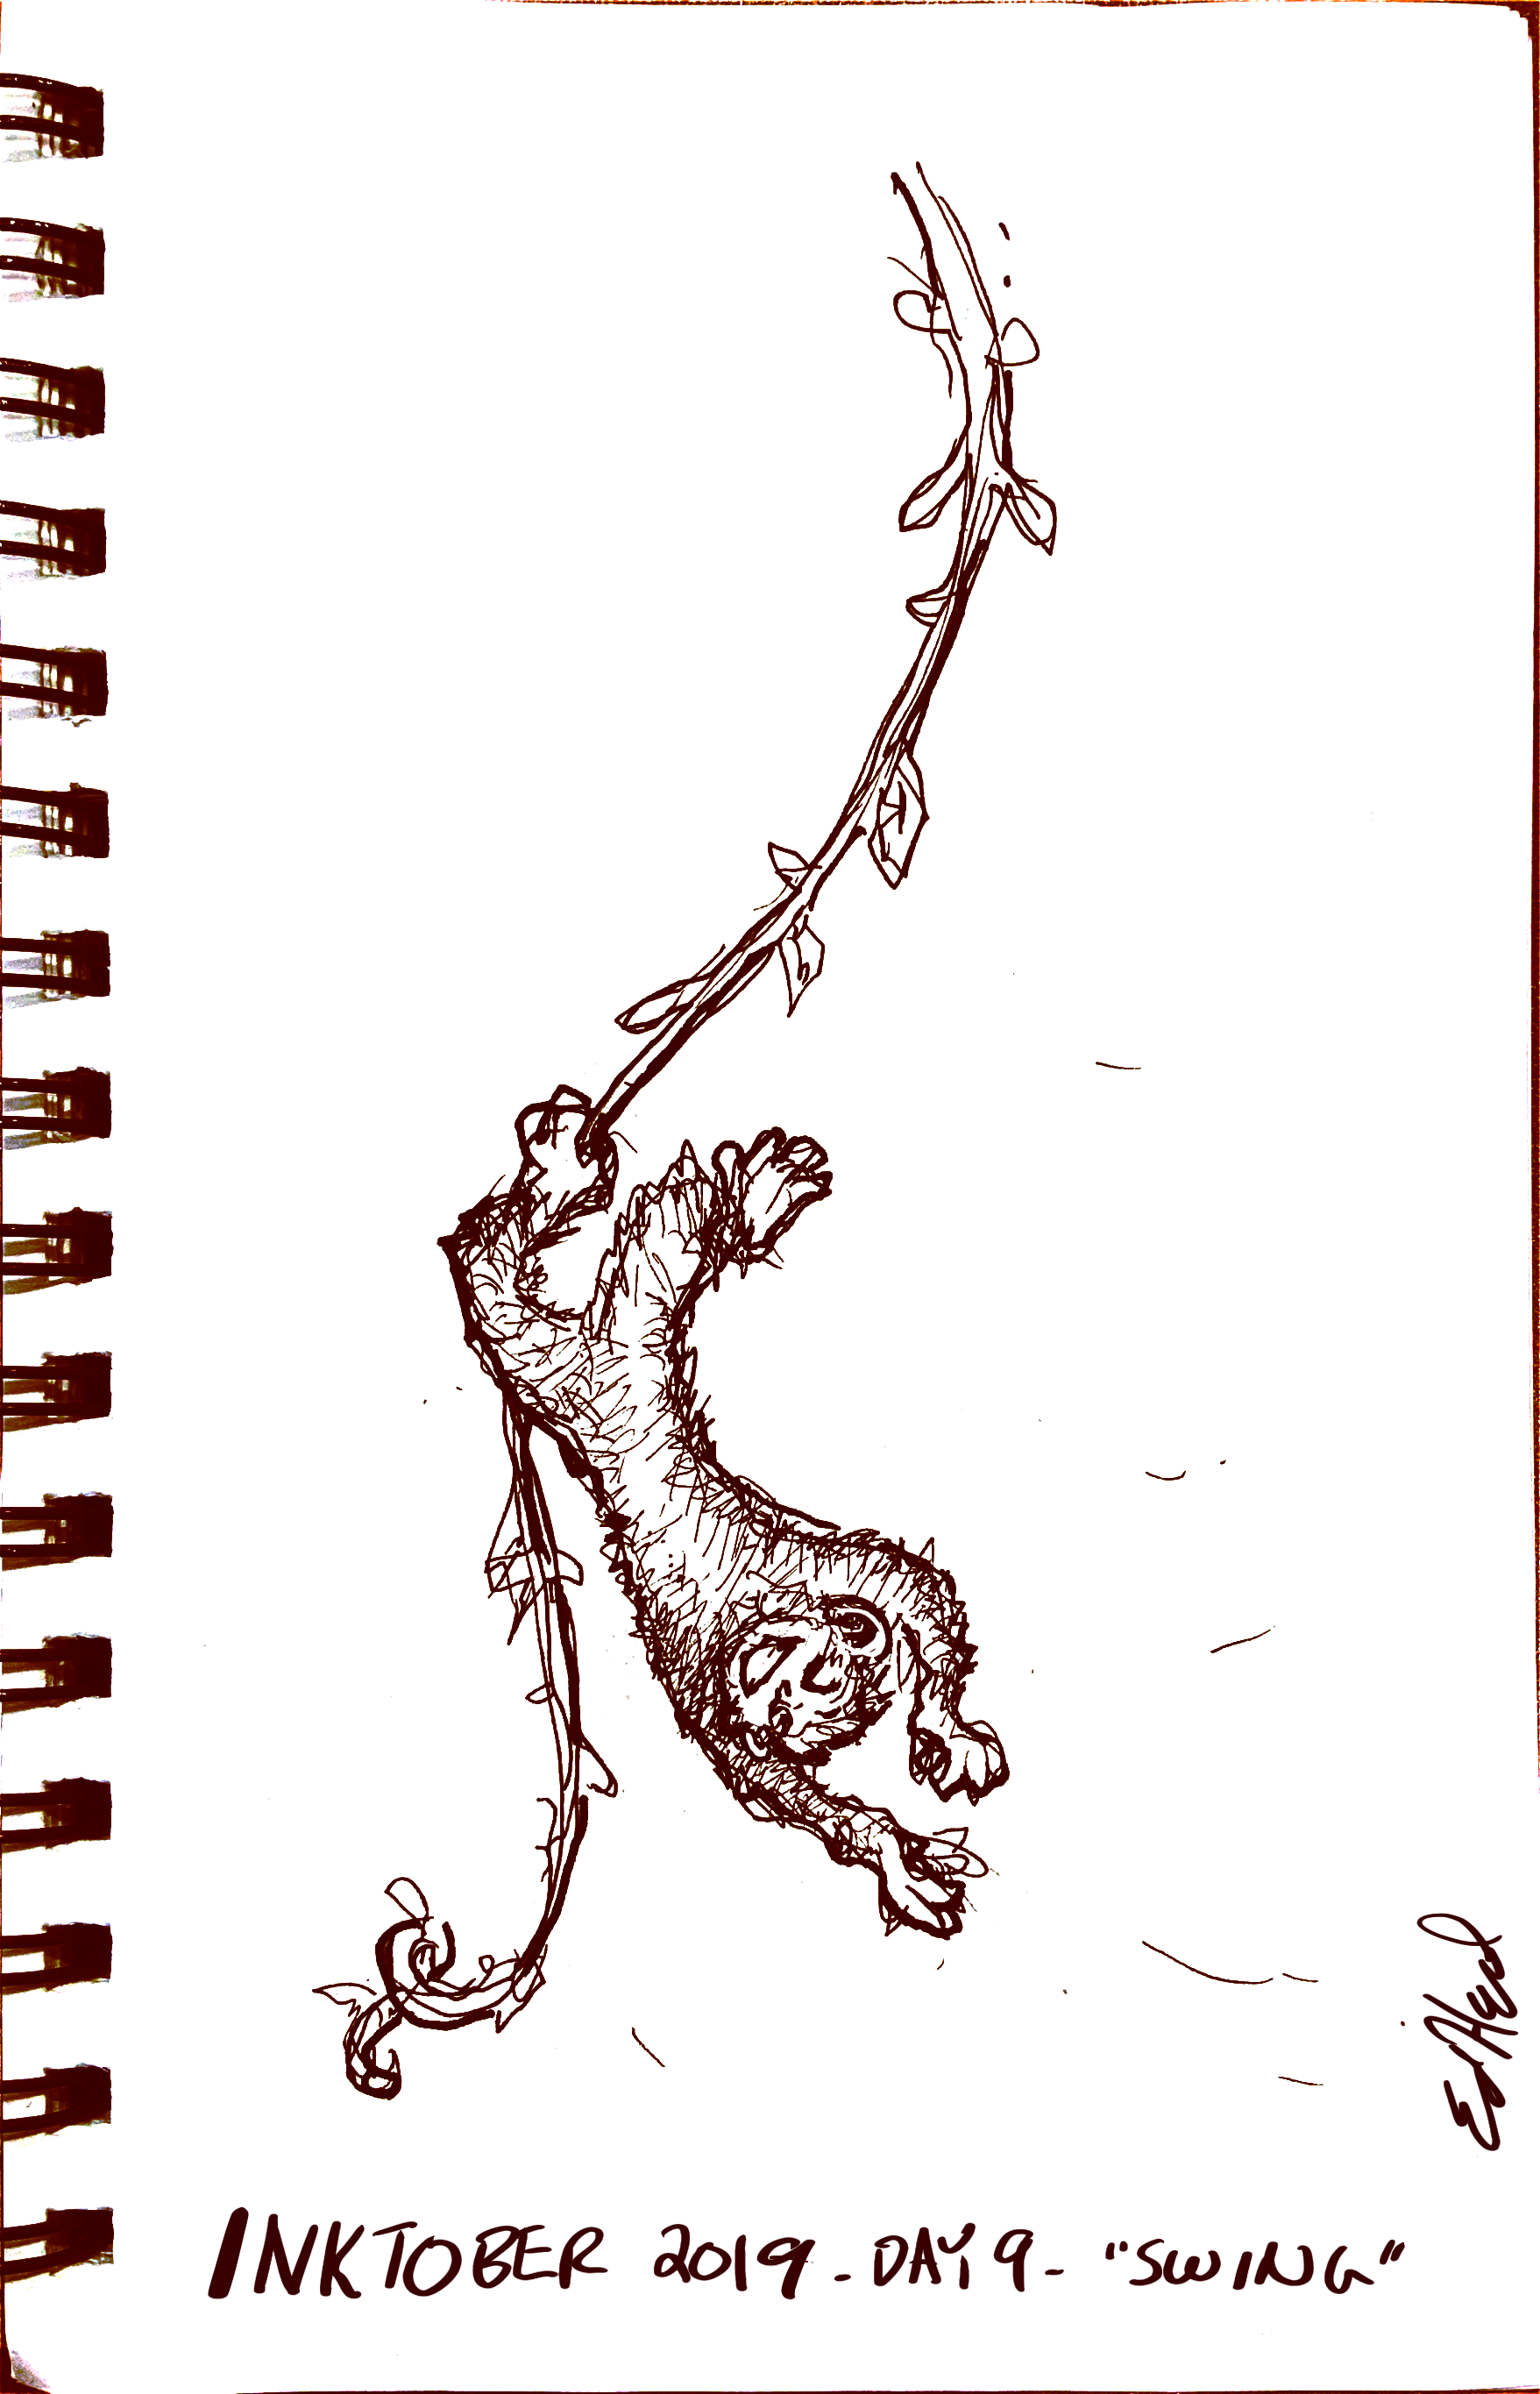 A happy monkey swinging upside down on a vine